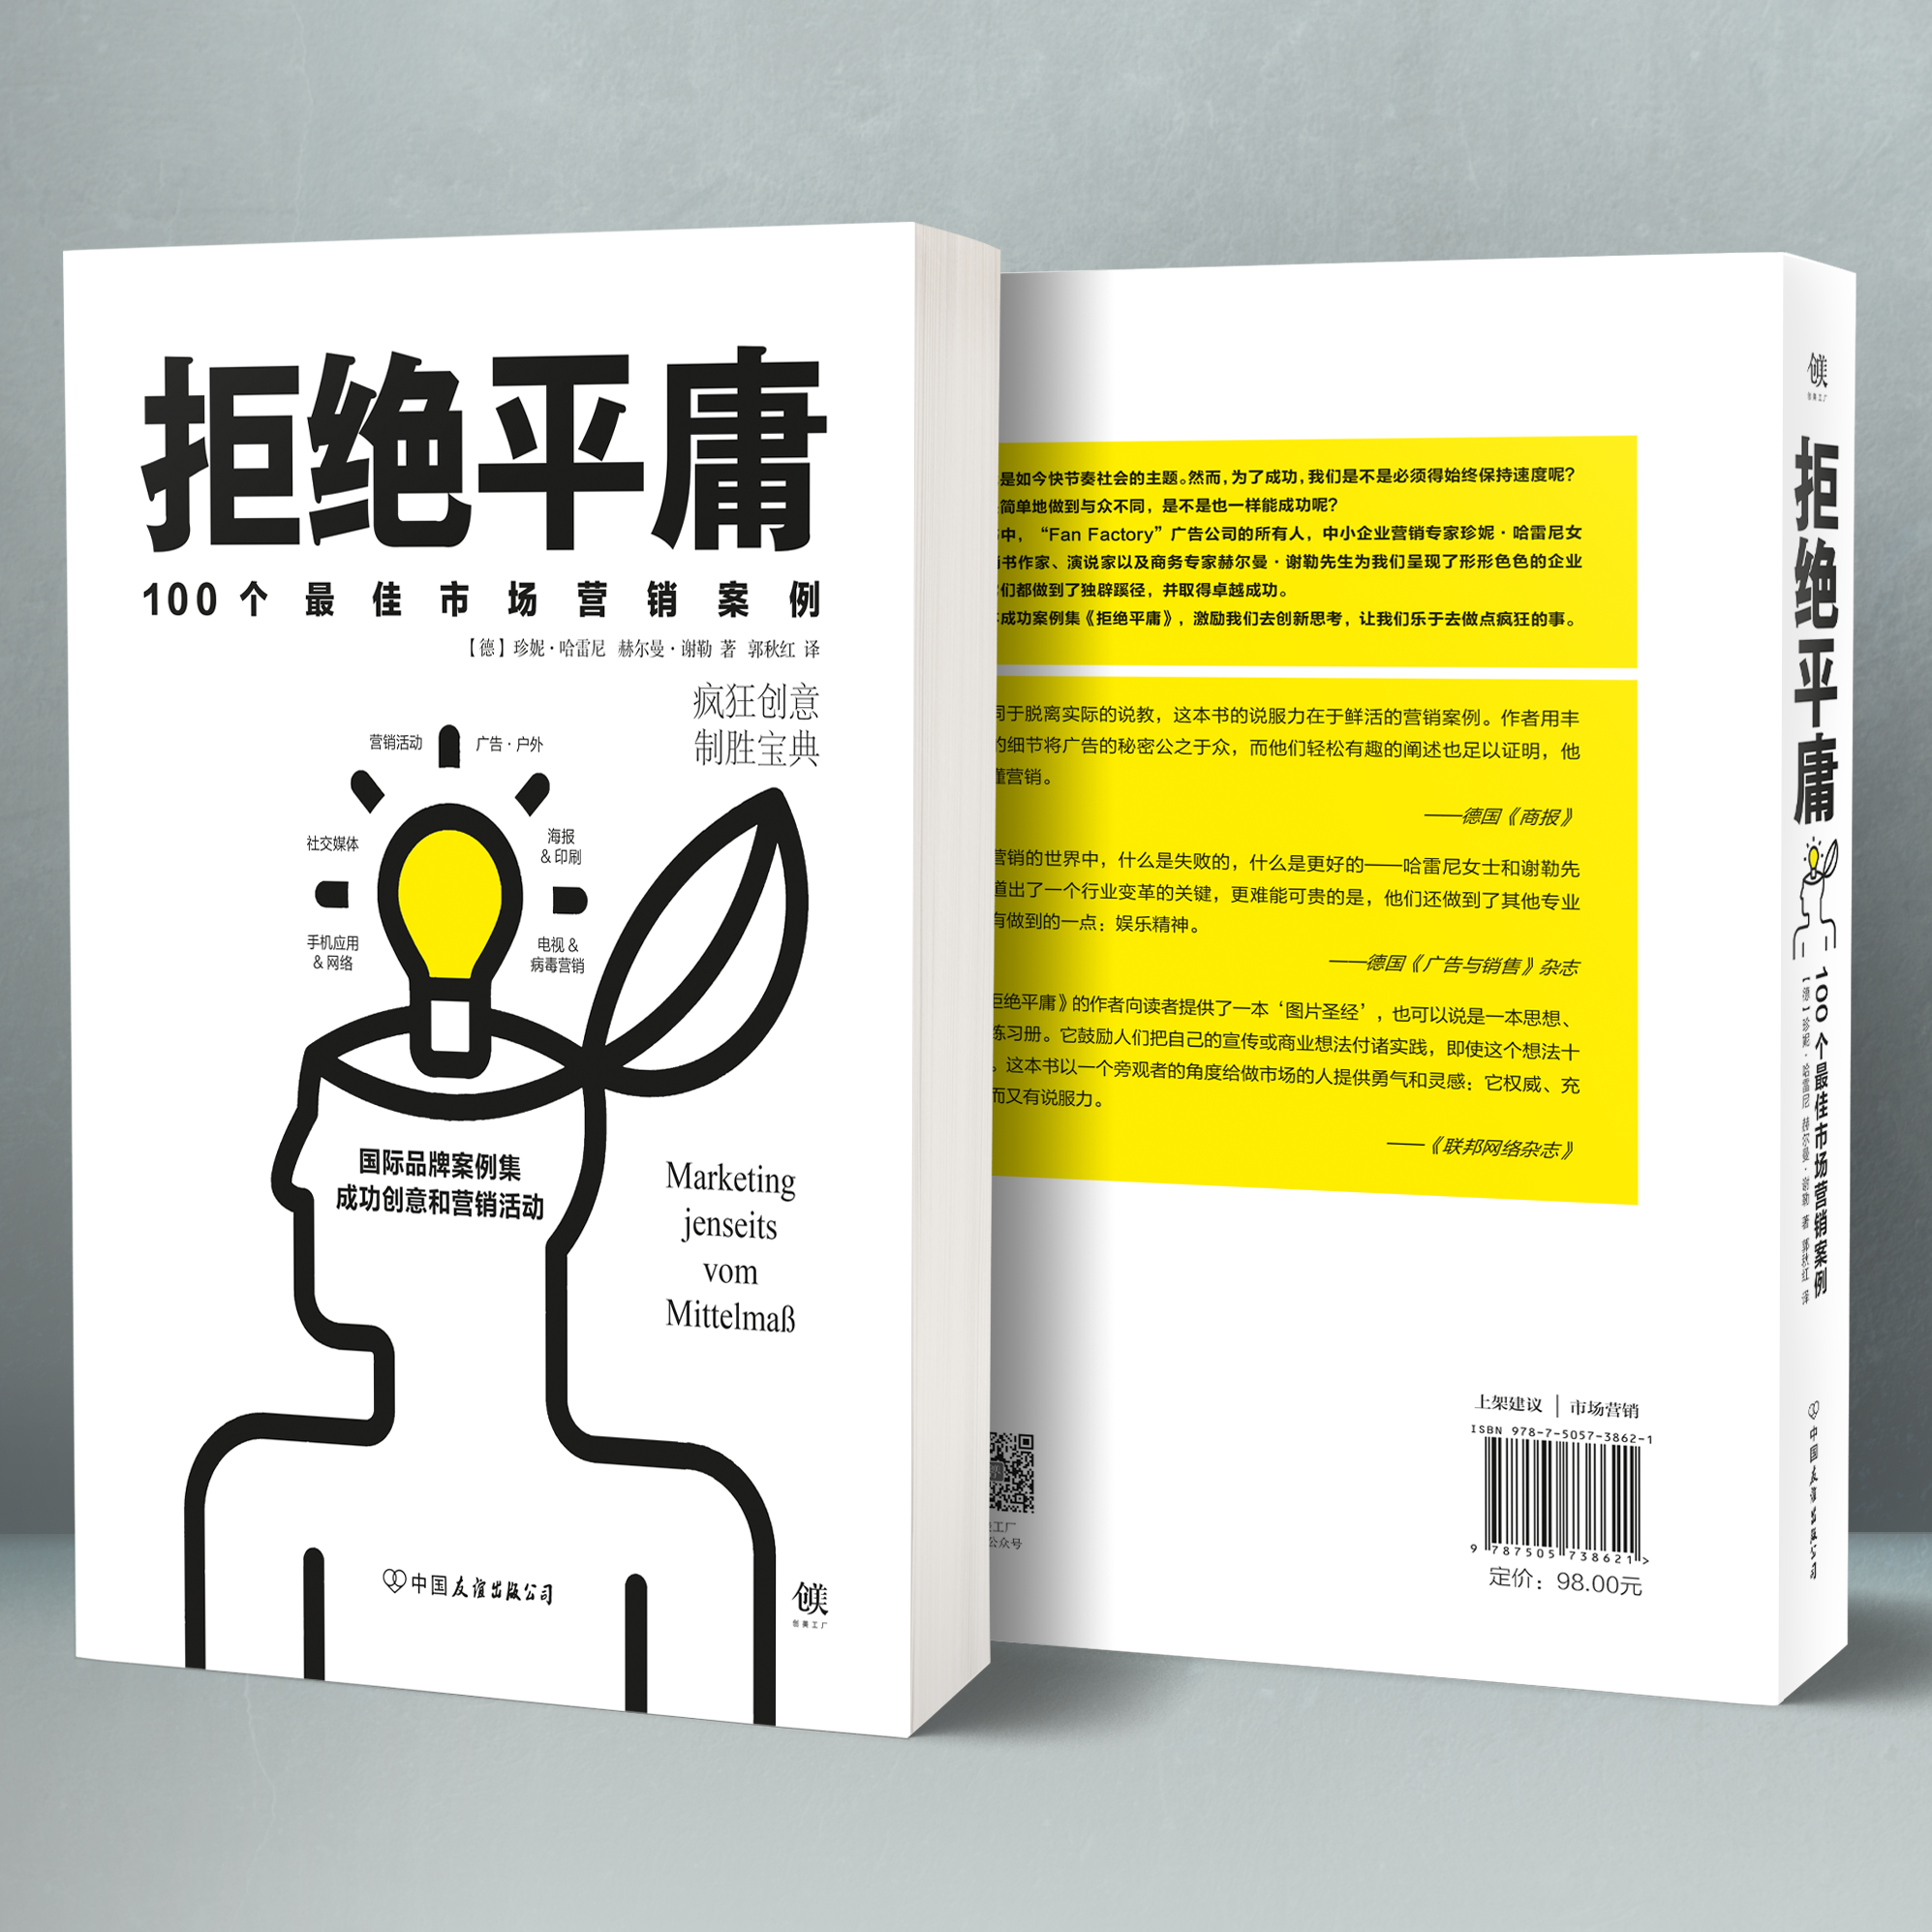 Marketing jenseits vom Mittelmaß in der zweiten Auflage in China